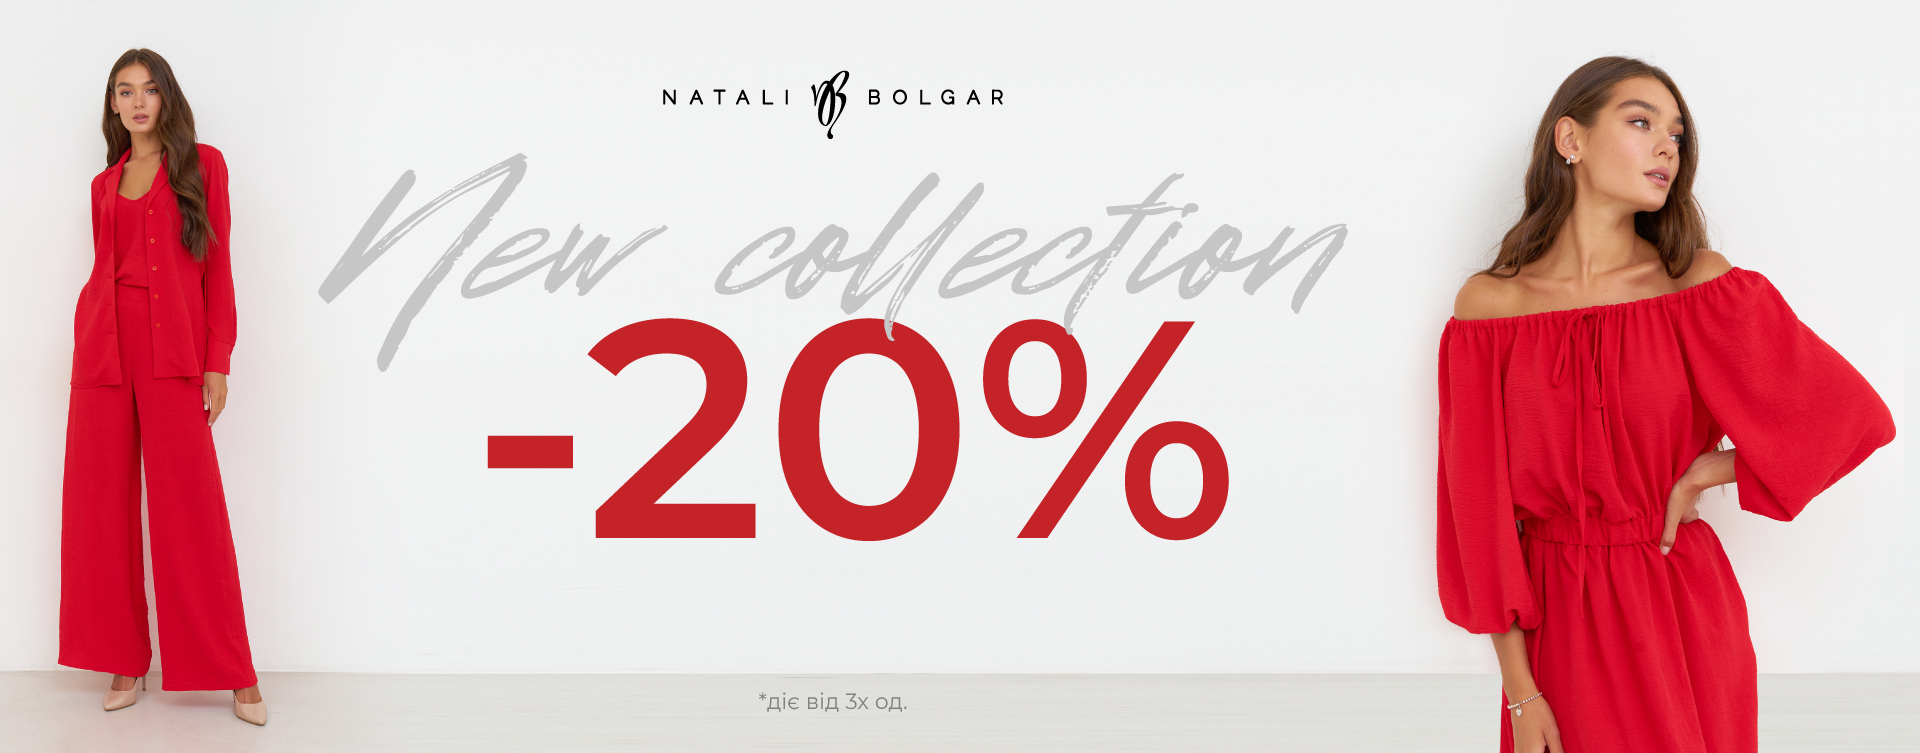 - 20% on new products at Natali Bolgar